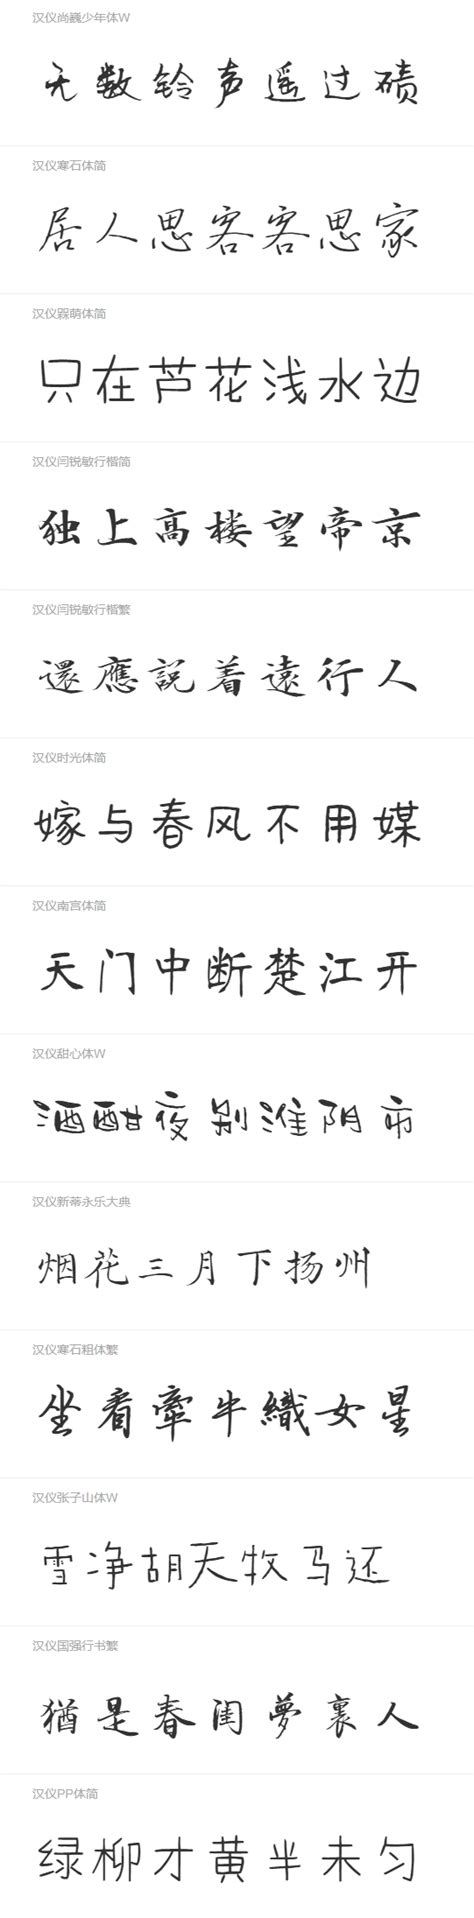 73款手写风格的中文字体免费下载 - PS教程网